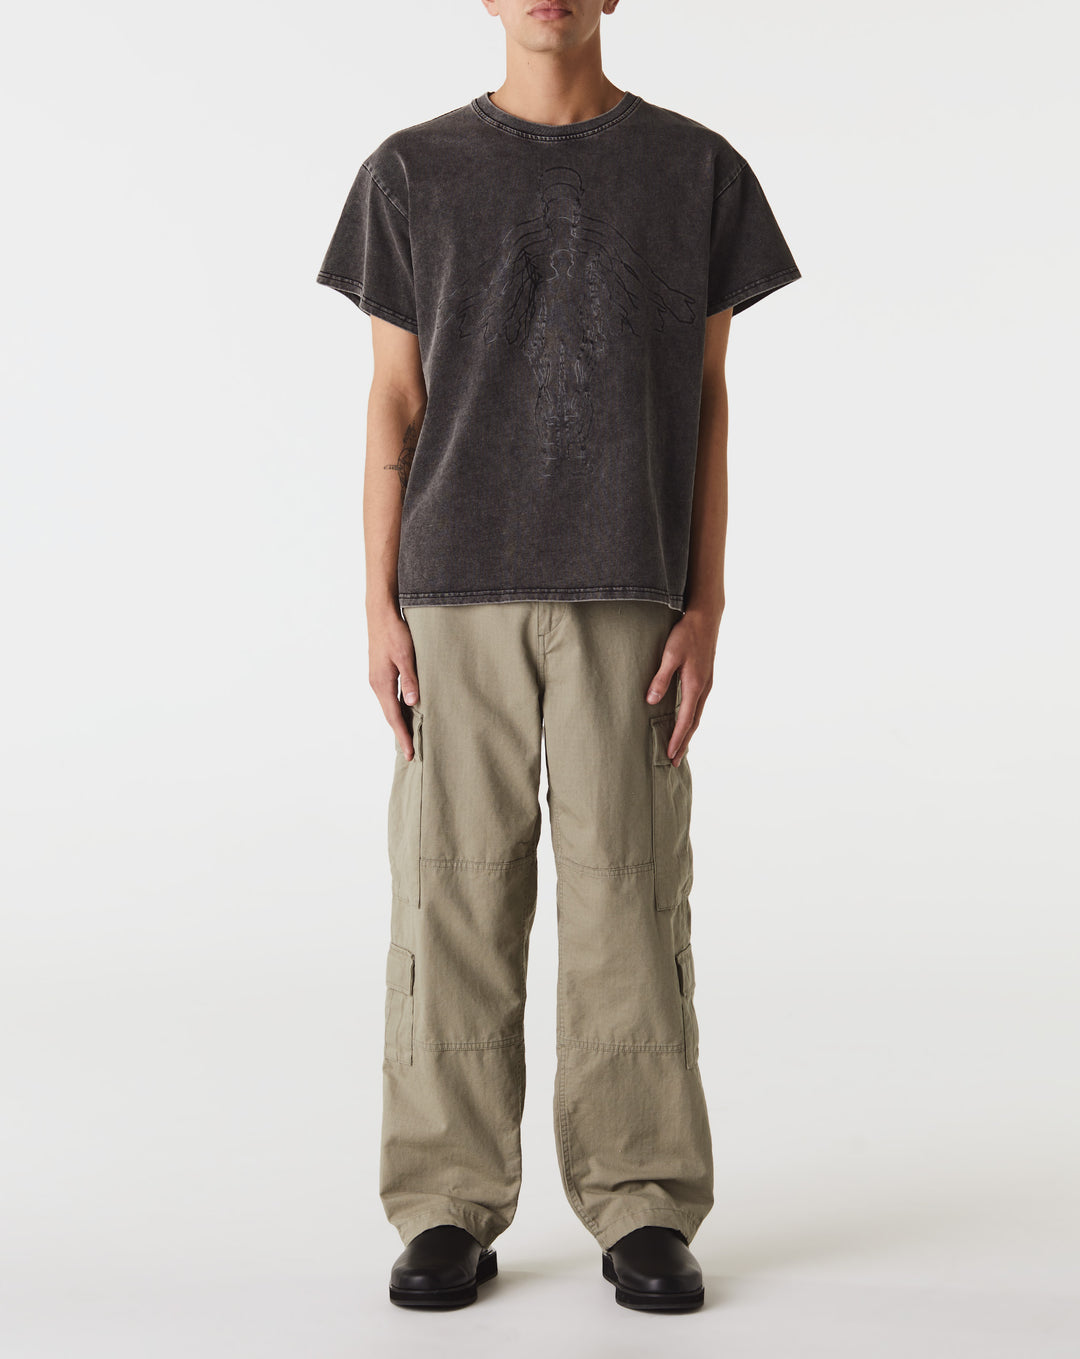 Turtleneck wool and cashmere-blend sweater Transition T-Shirt  - Cheap Urlfreeze Jordan outlet